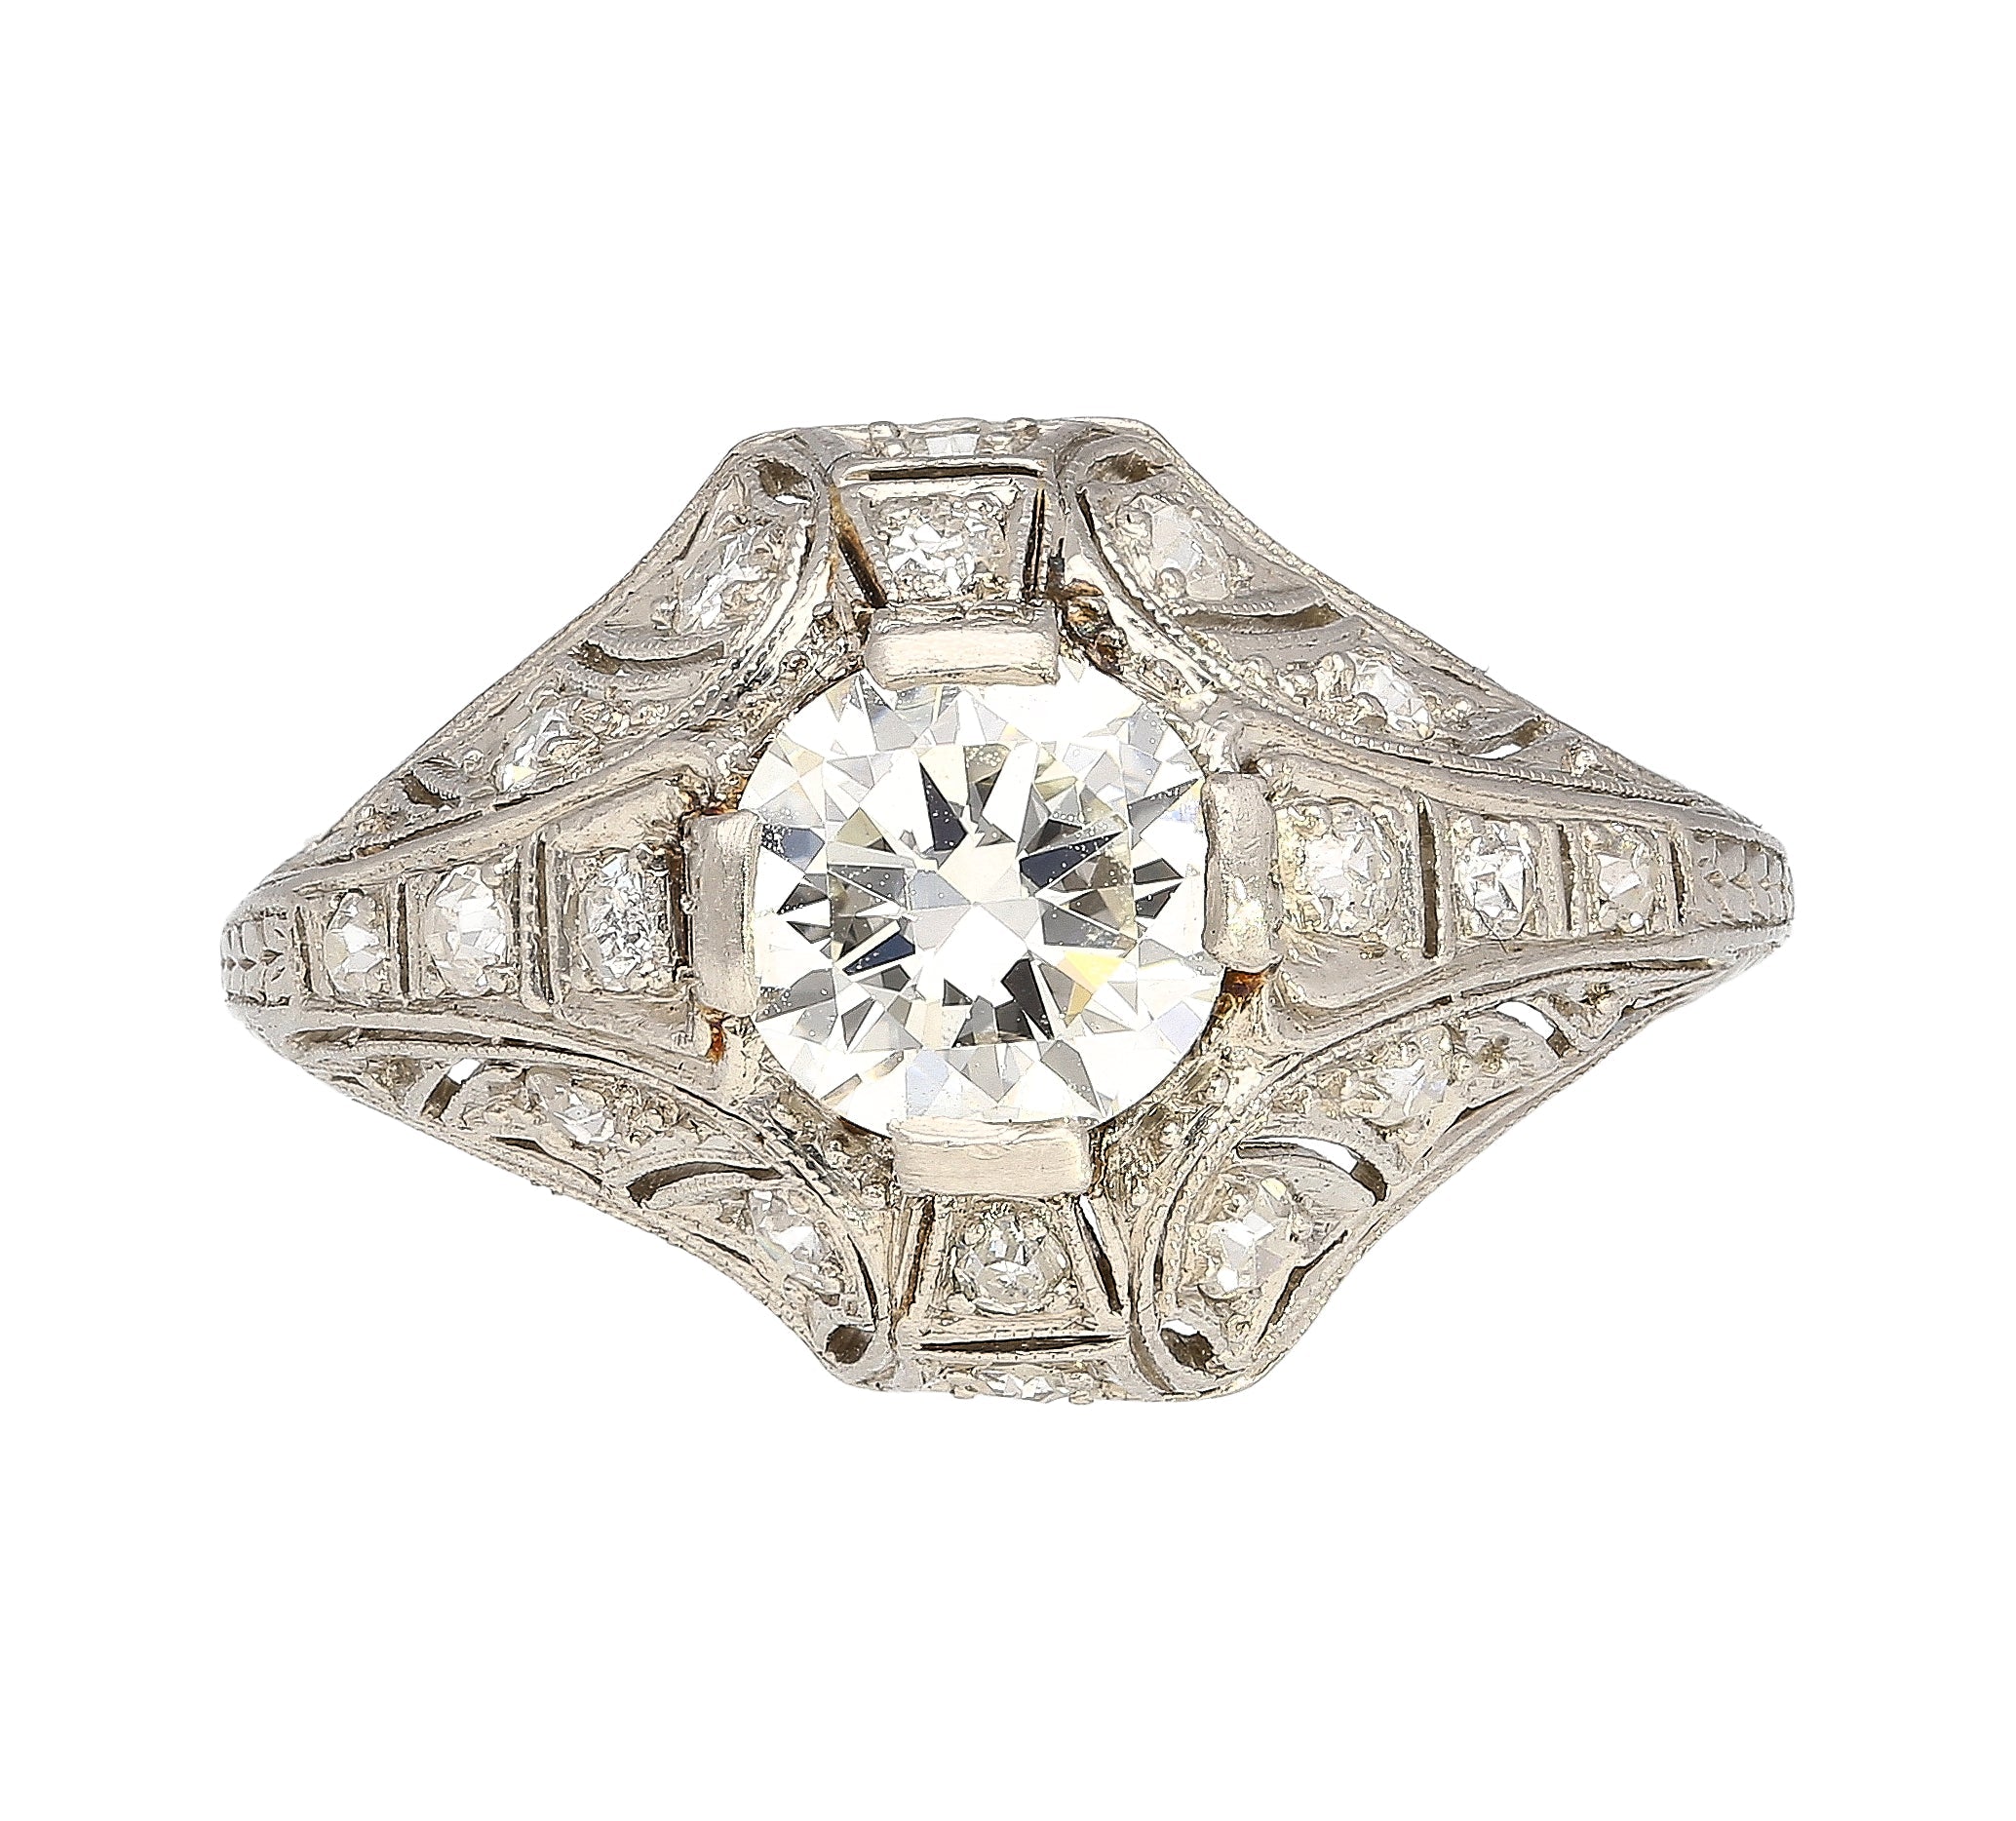 Antique-Art-Deco-Era-Platinum-1-Carat-Old-European-Cut-Diamond-Ring-Rings.jpg